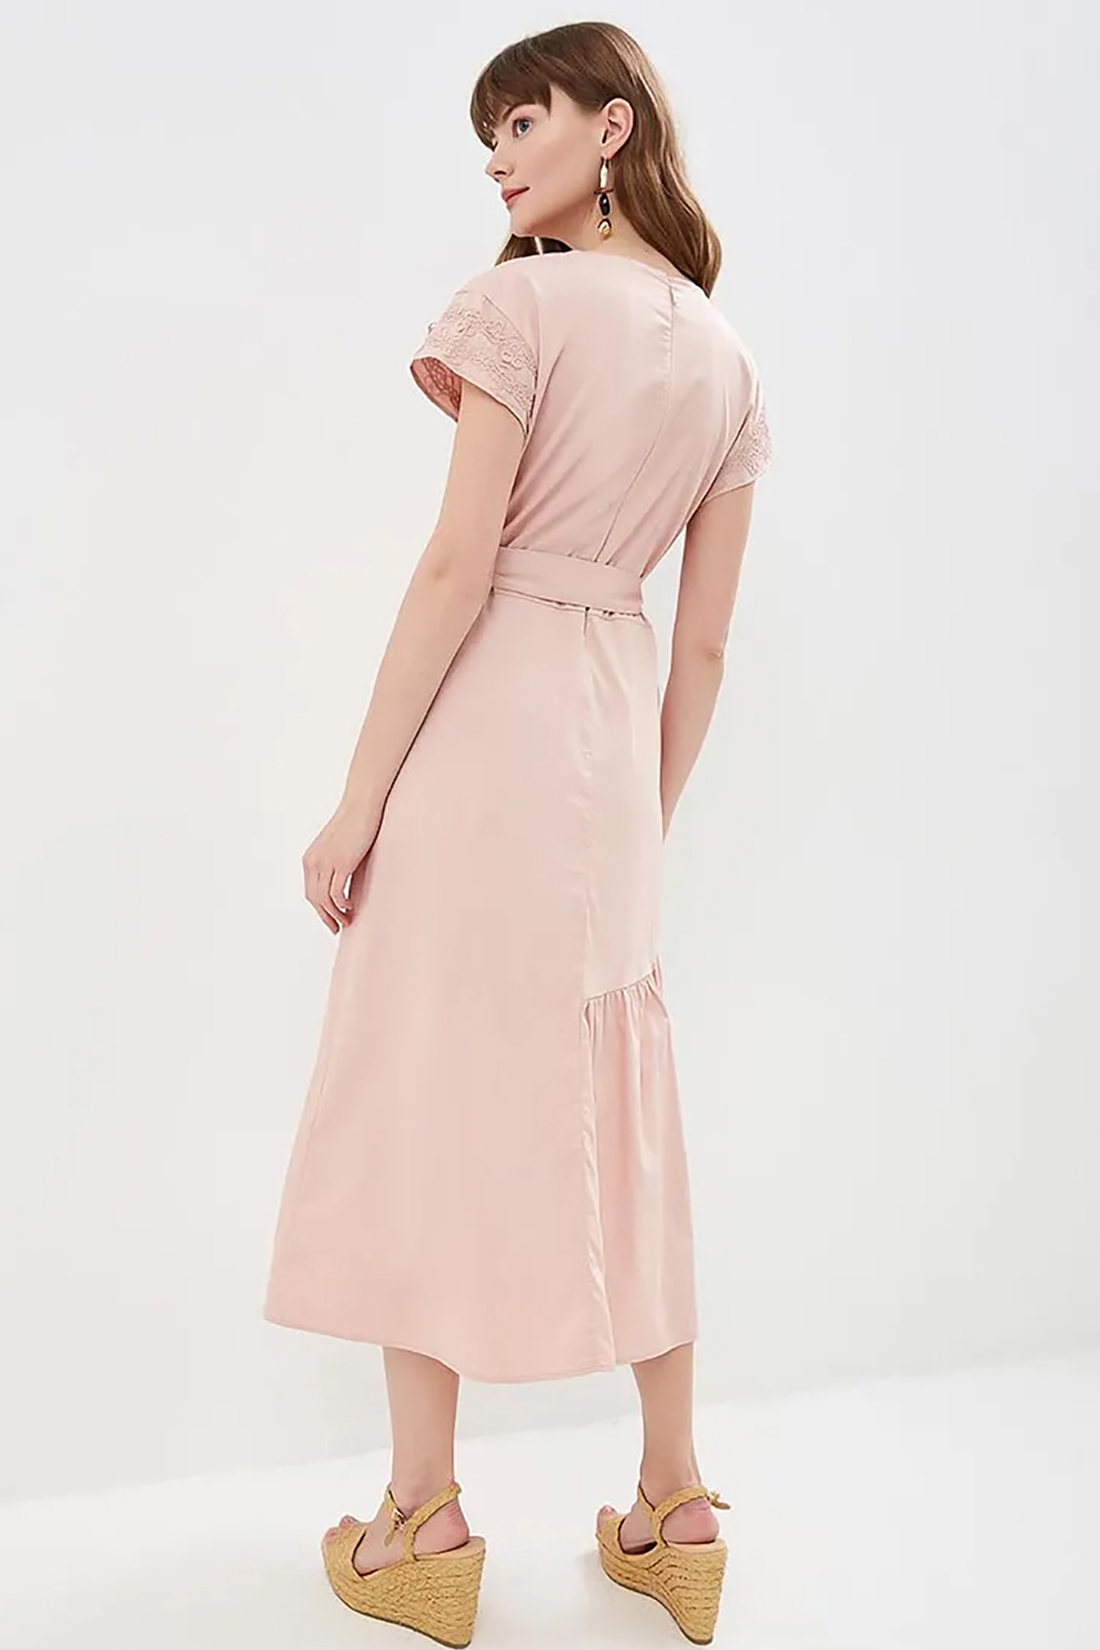 Платье с асимметричной оборкой (арт. baon B459050), размер M, цвет розовый Платье с асимметричной оборкой (арт. baon B459050) - фото 2